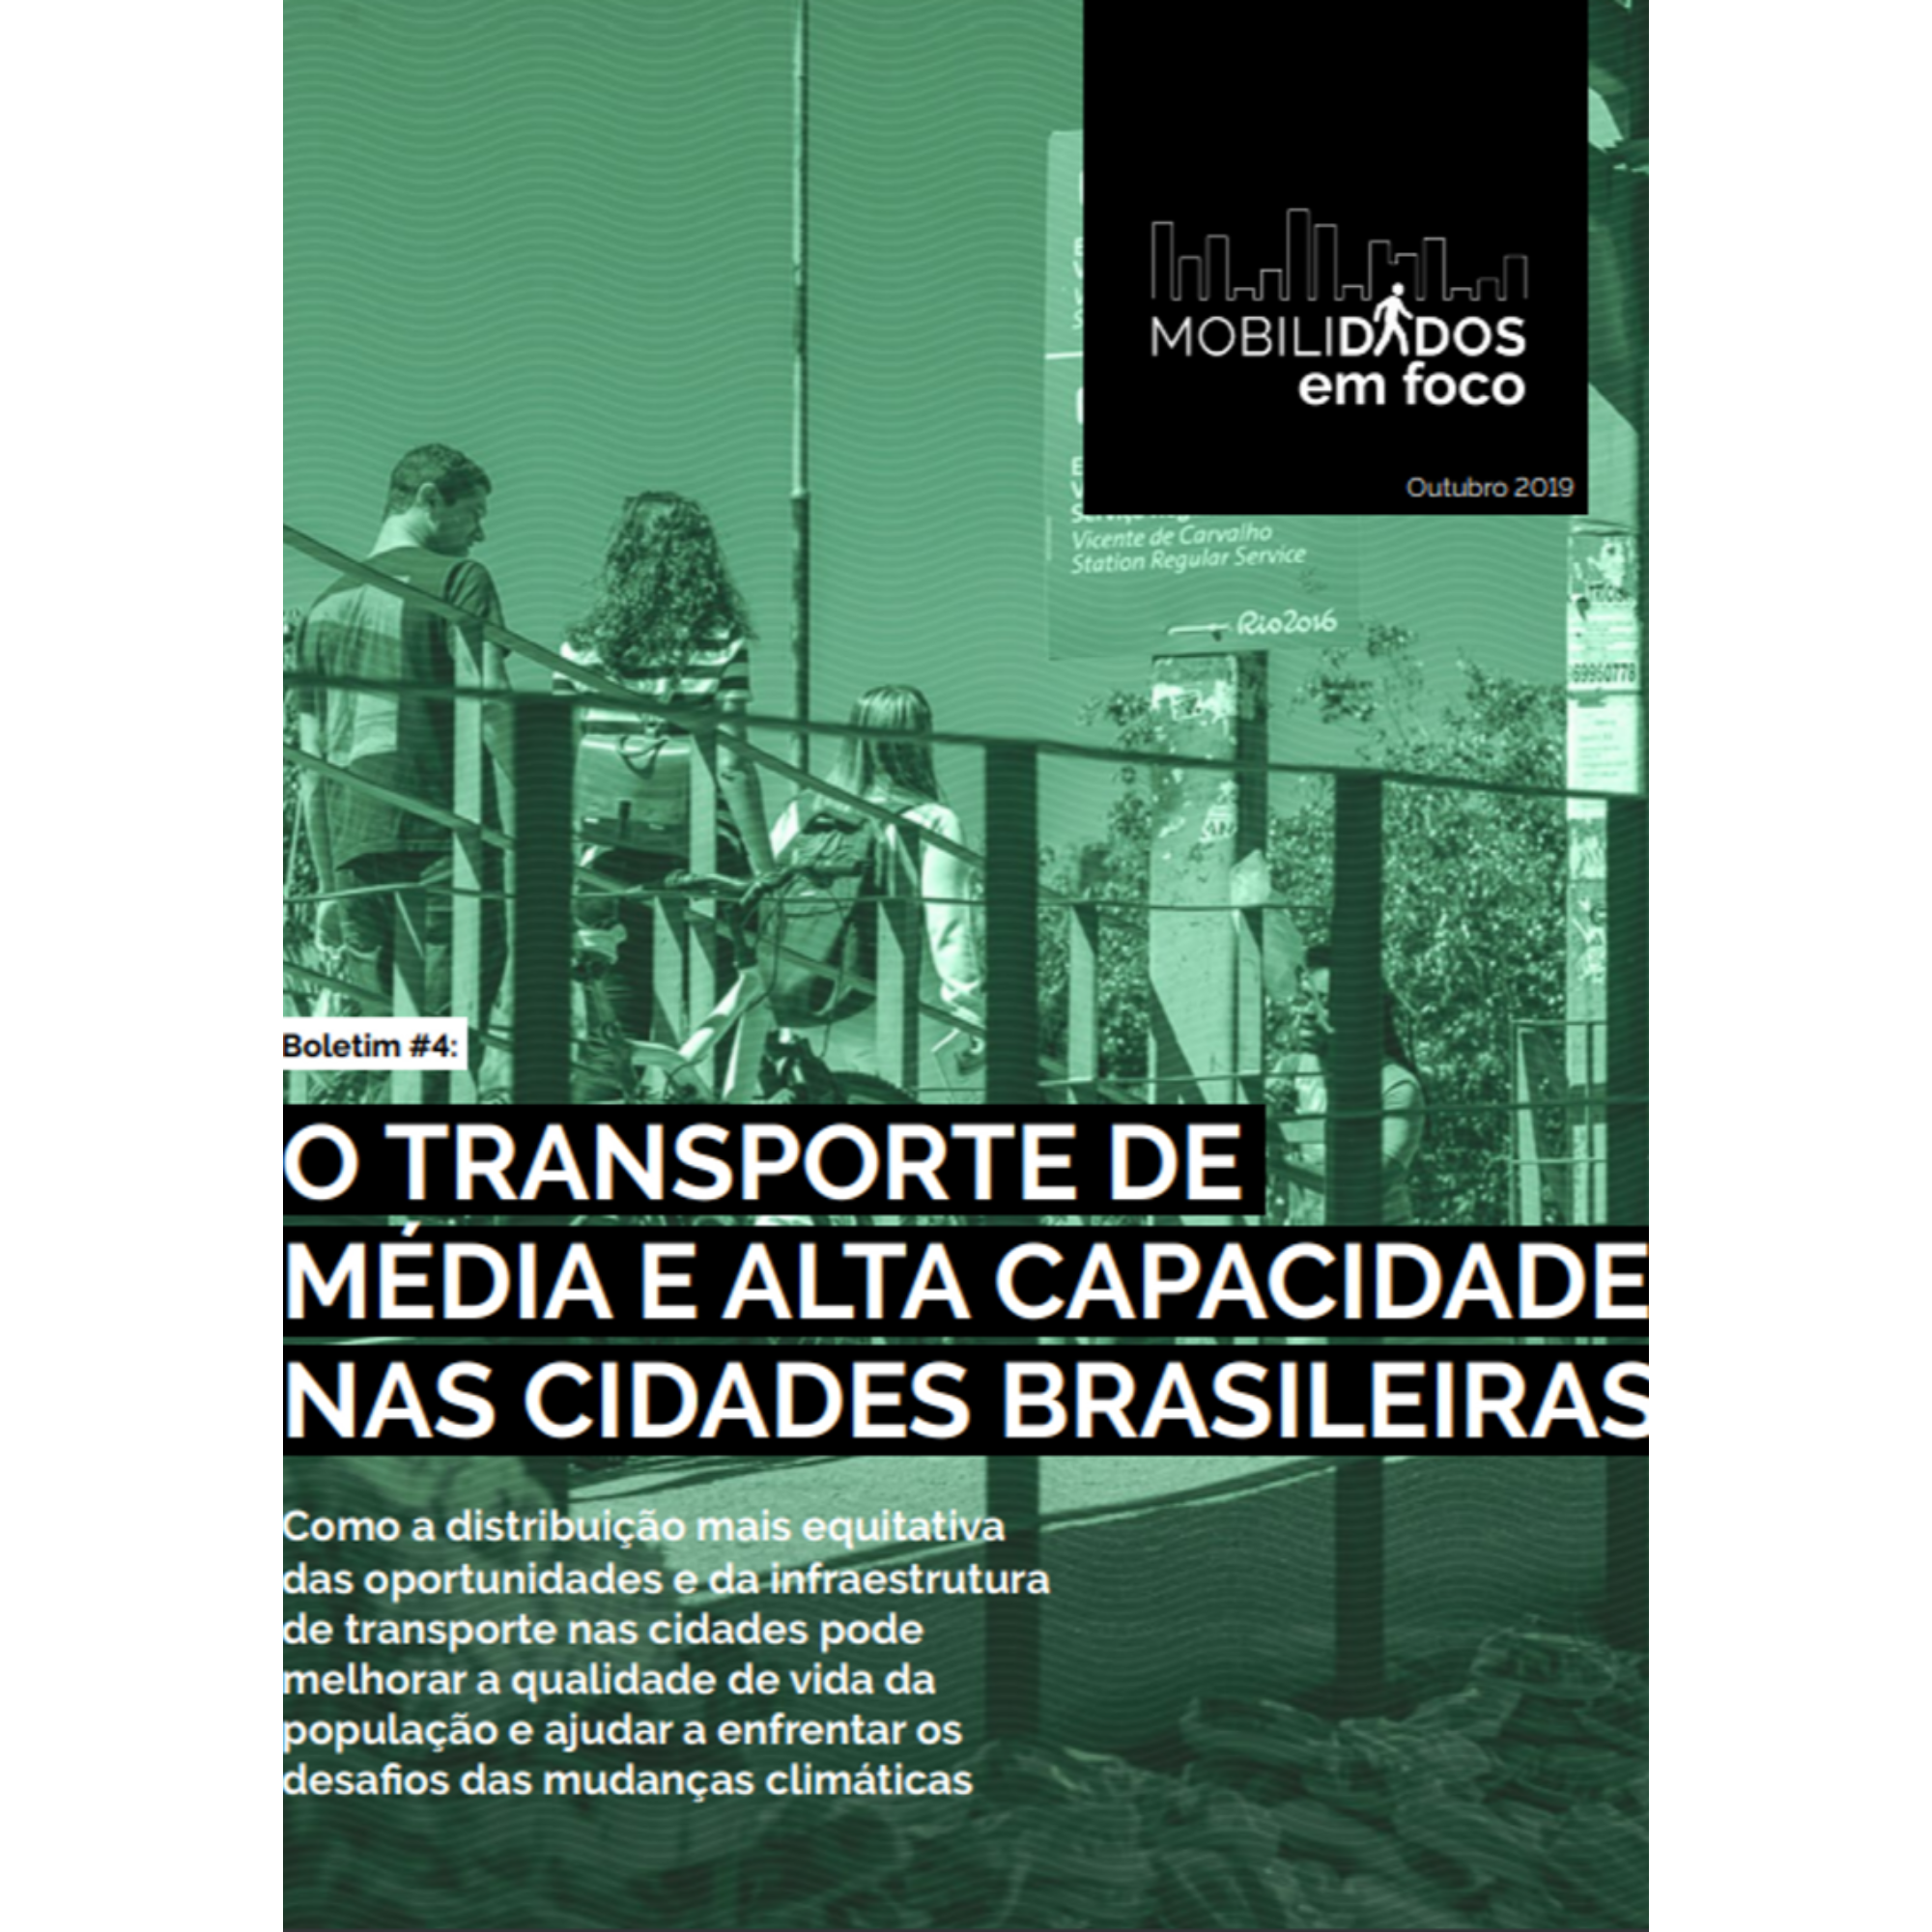 Boletim #4 MobiliDADOS: o transporte de média e alta capacidade nas cidades brasileiras